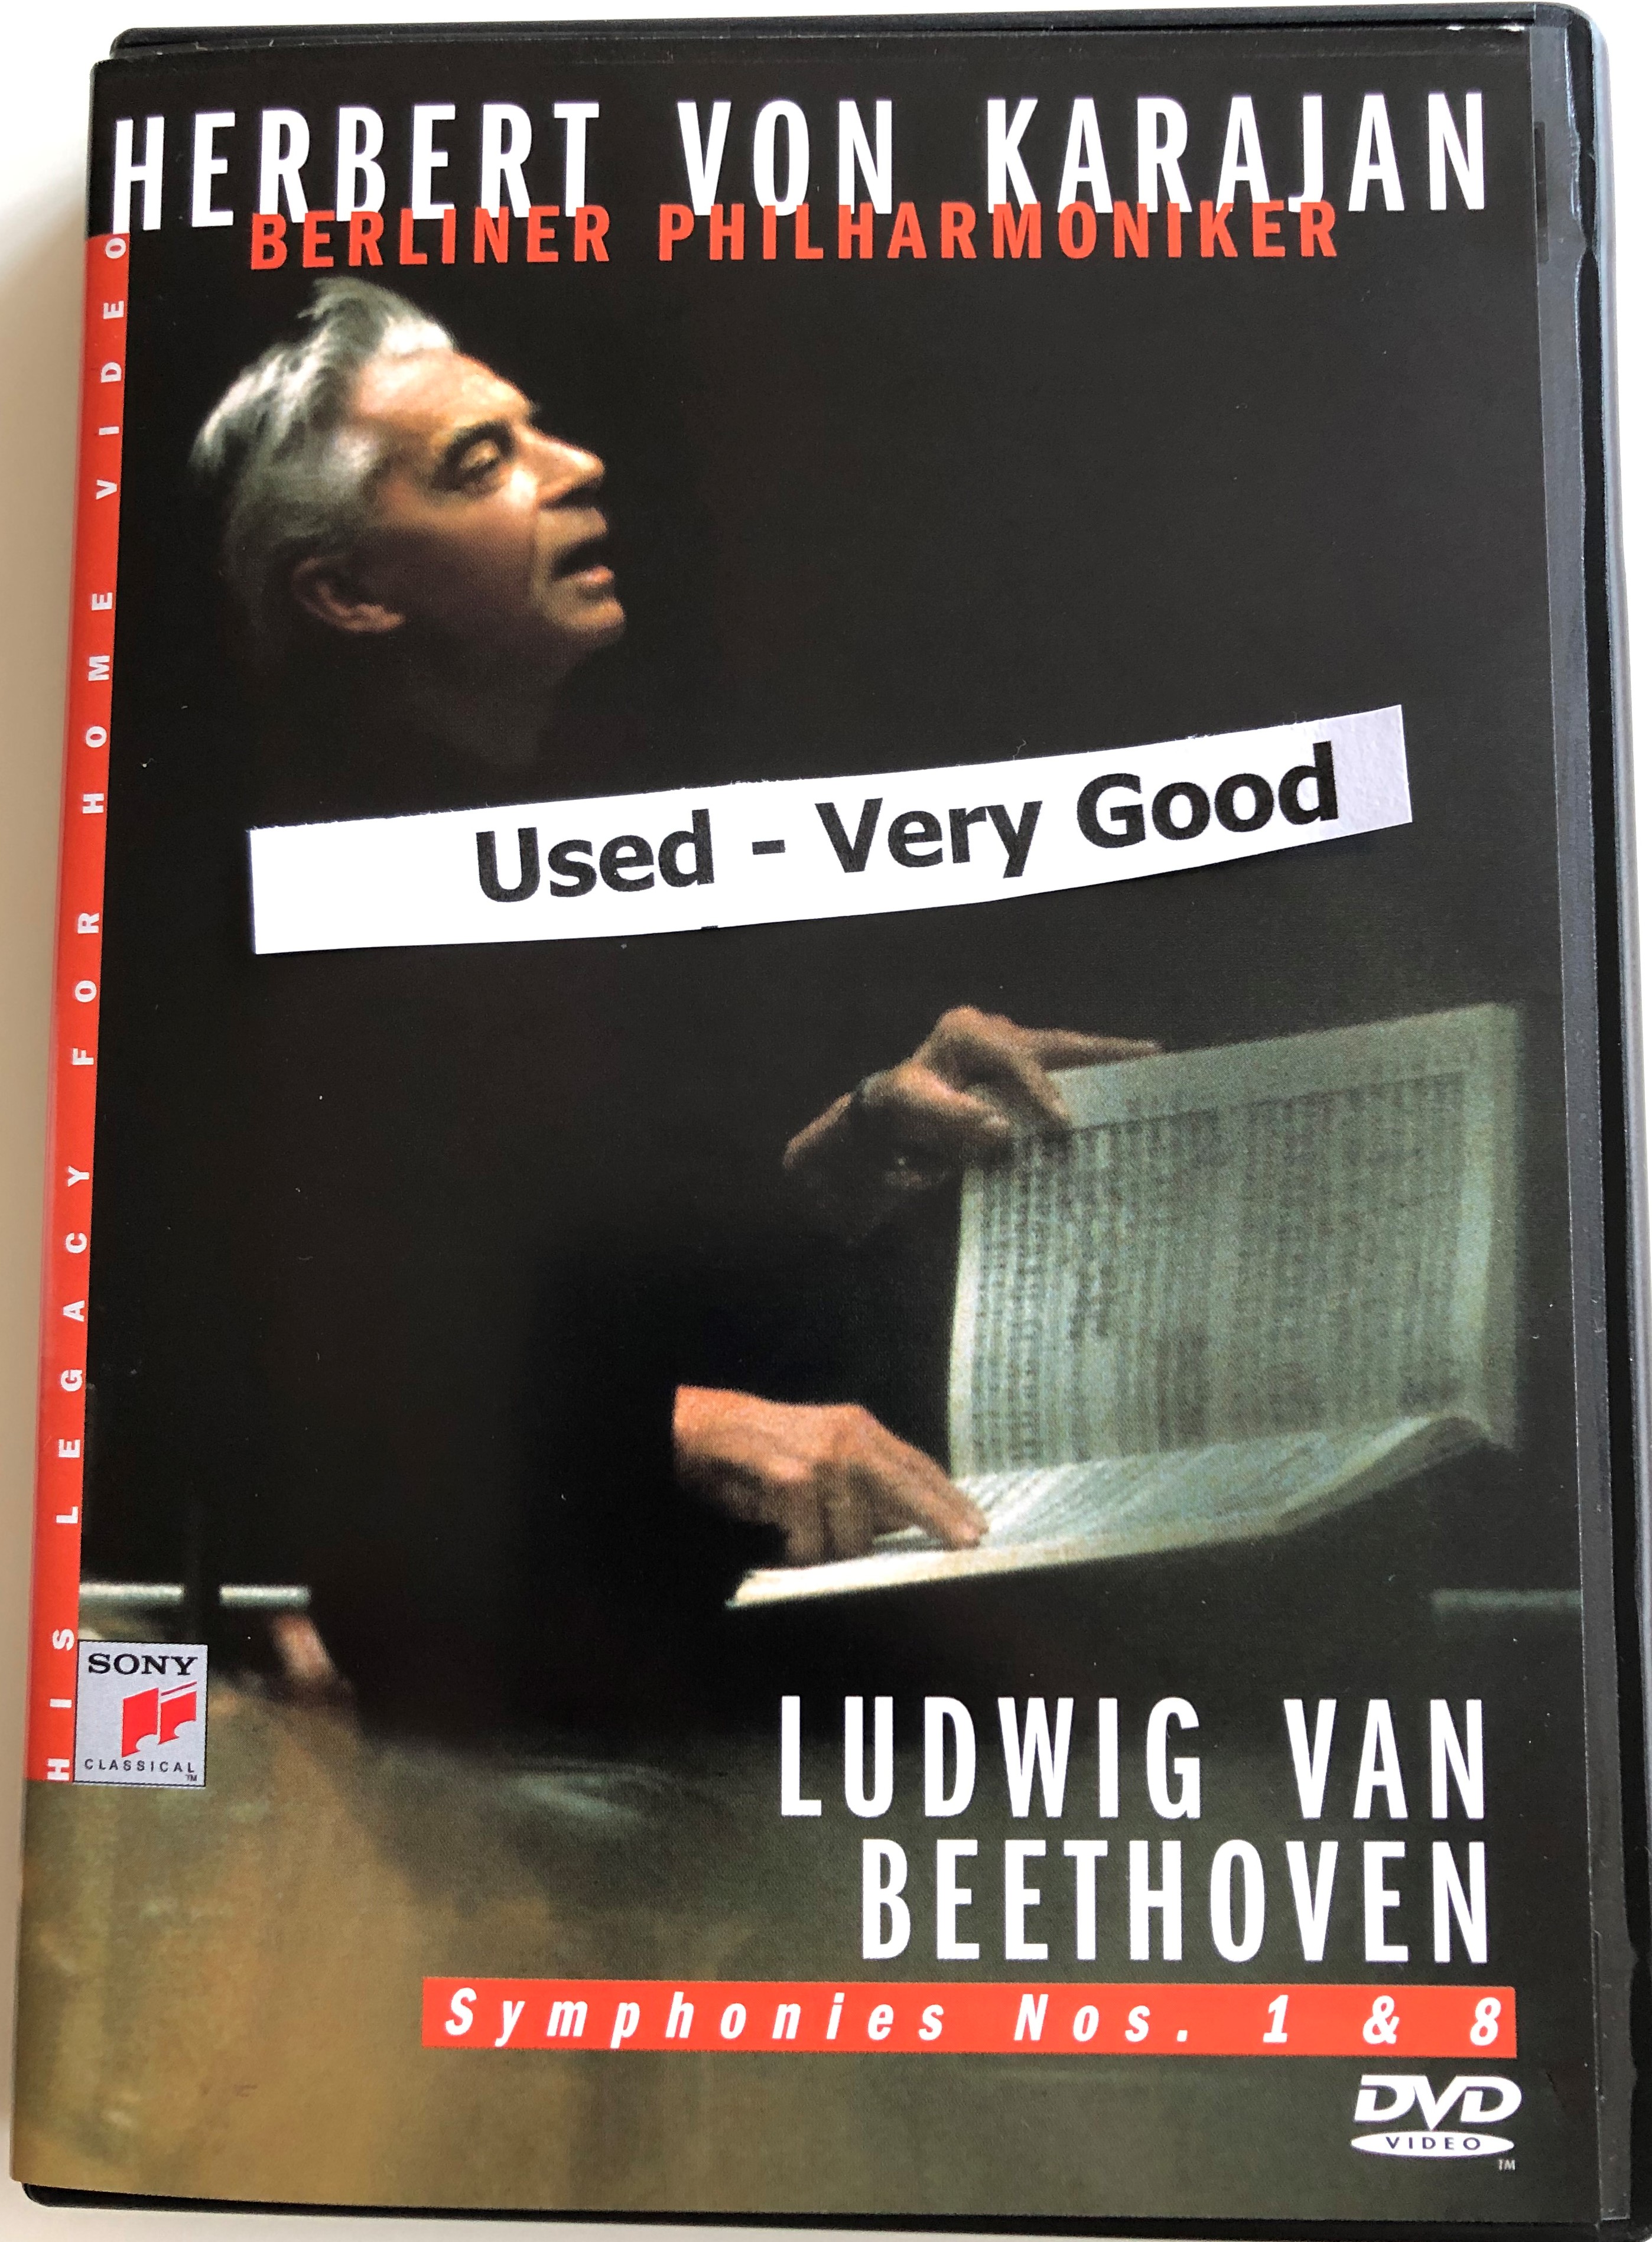 Herbert von Karajan DVD 1984 Ludwig van Beethoven 1.JPG